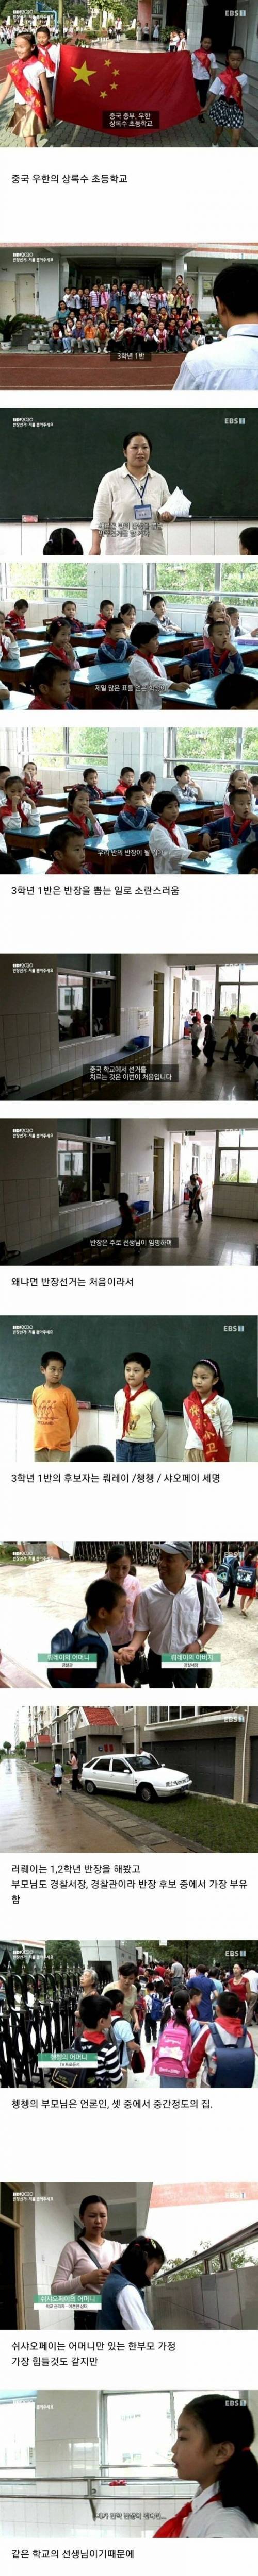 18 중국 초등학교의 반장 선거.jpg